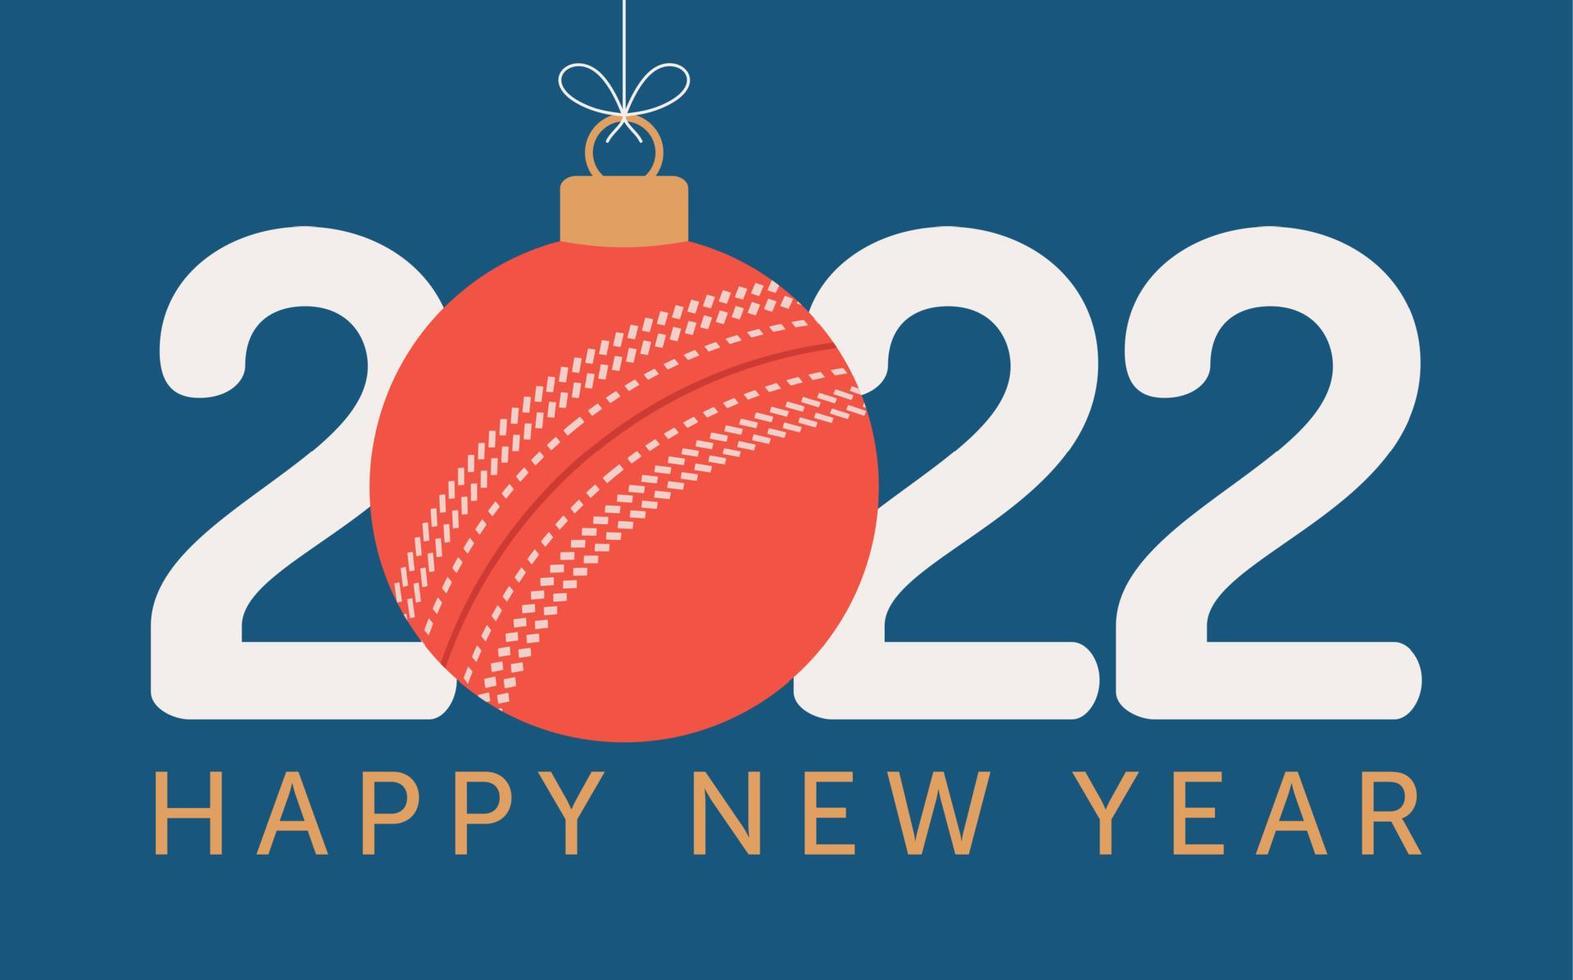 2022 feliz año nuevo ilustración de vector de cricket. tarjeta de felicitación de deportes 2022 de estilo plano con una pelota de cricket en el fondo de color. ilustración vectorial.